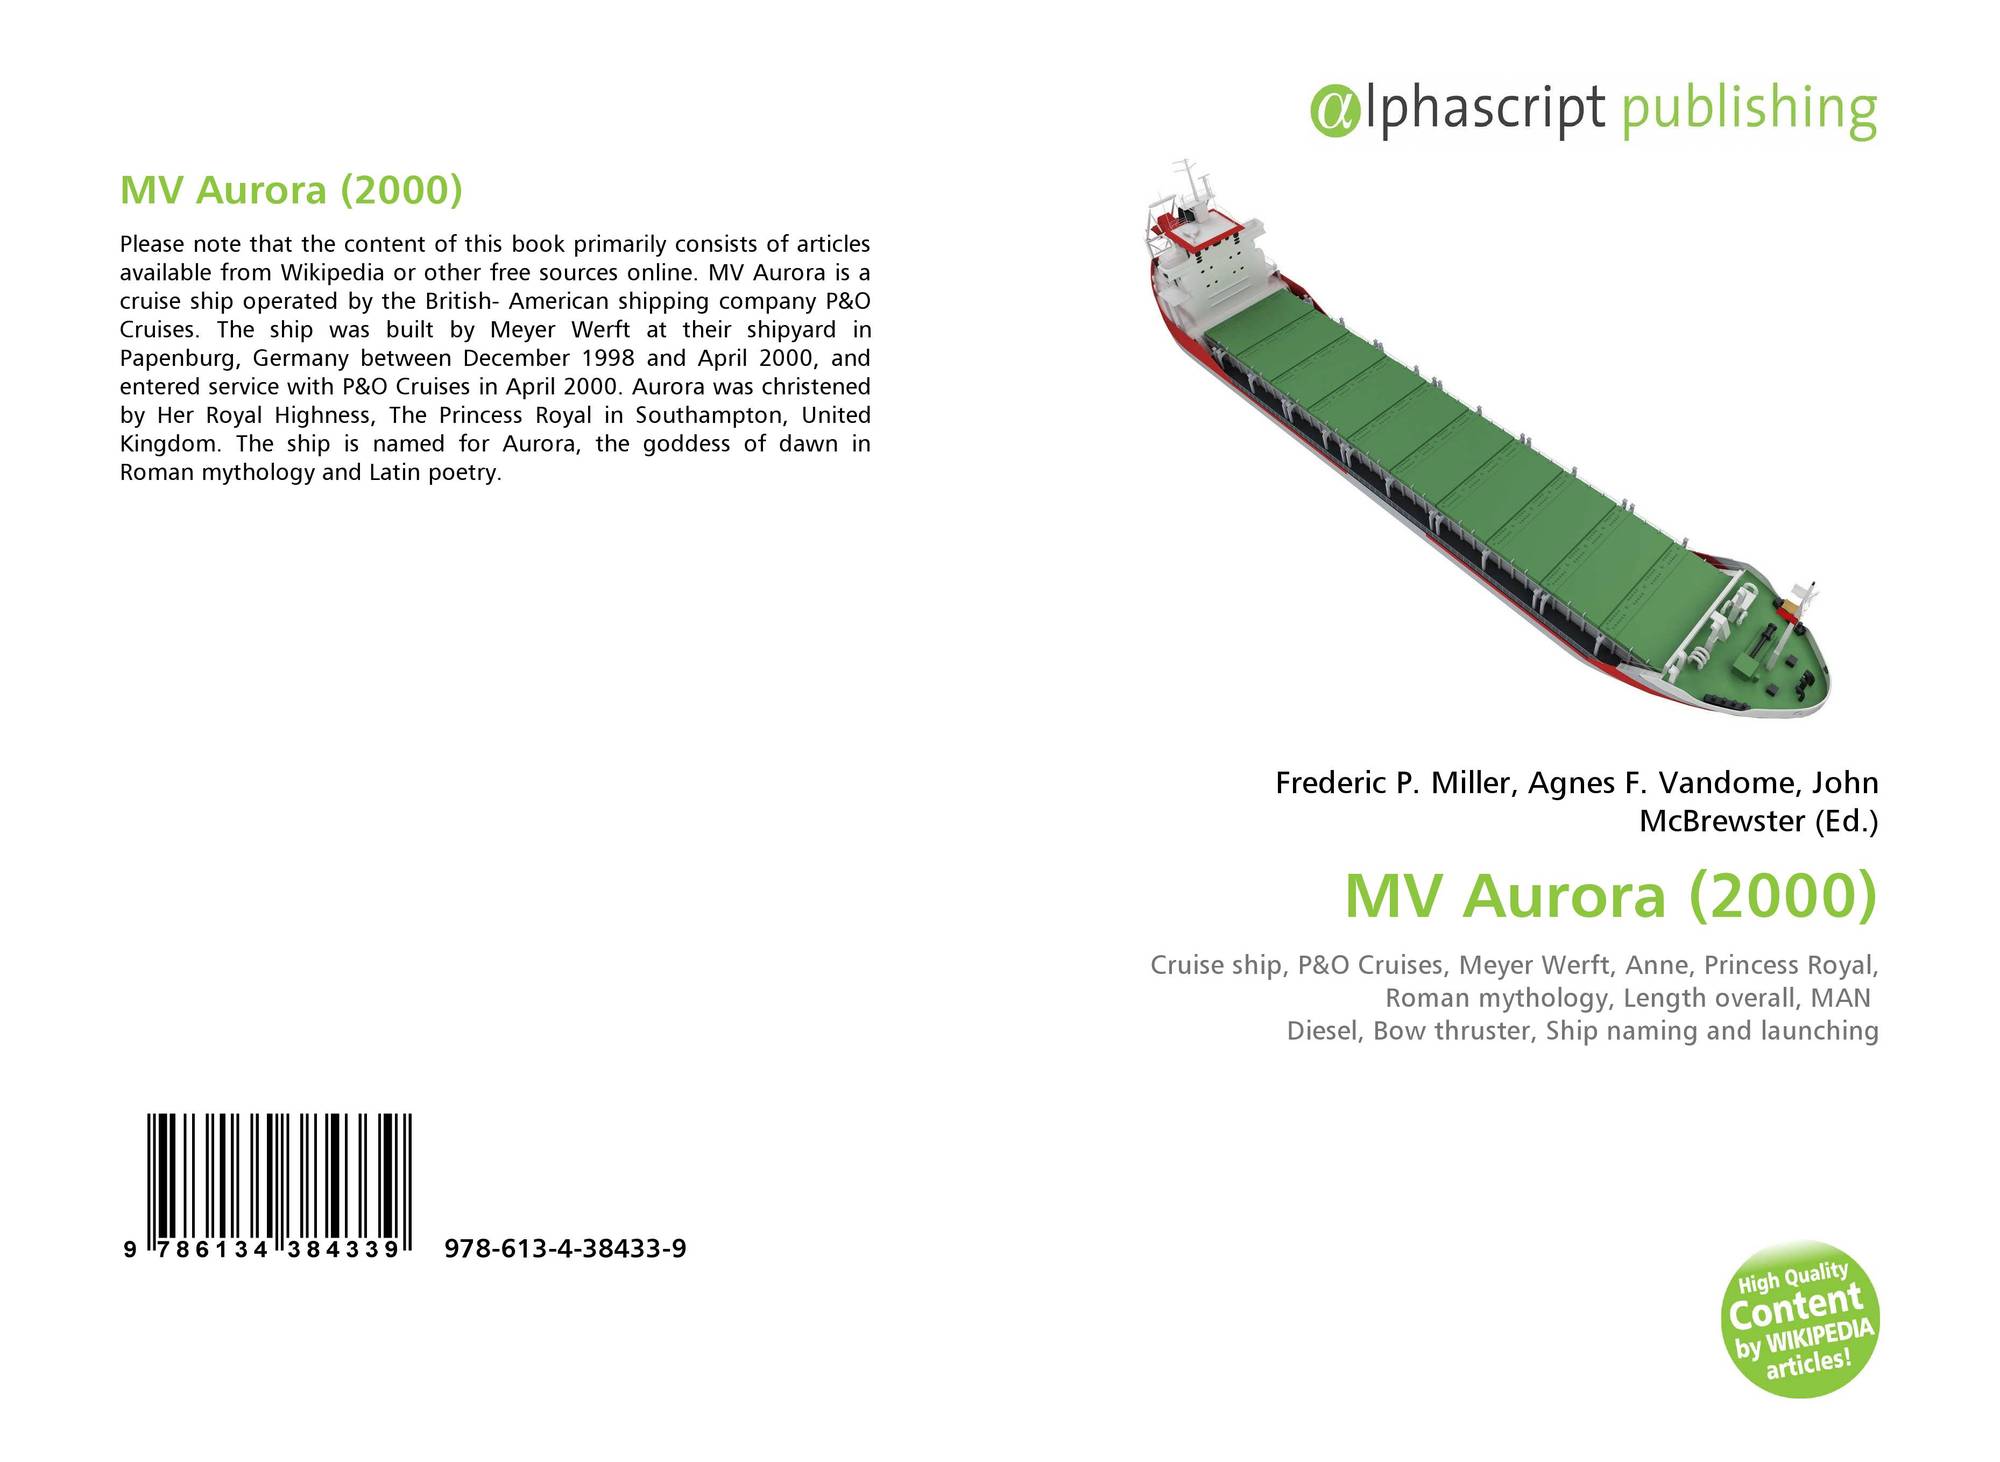 maiden voyage of mv aurora (2000) reaction paper